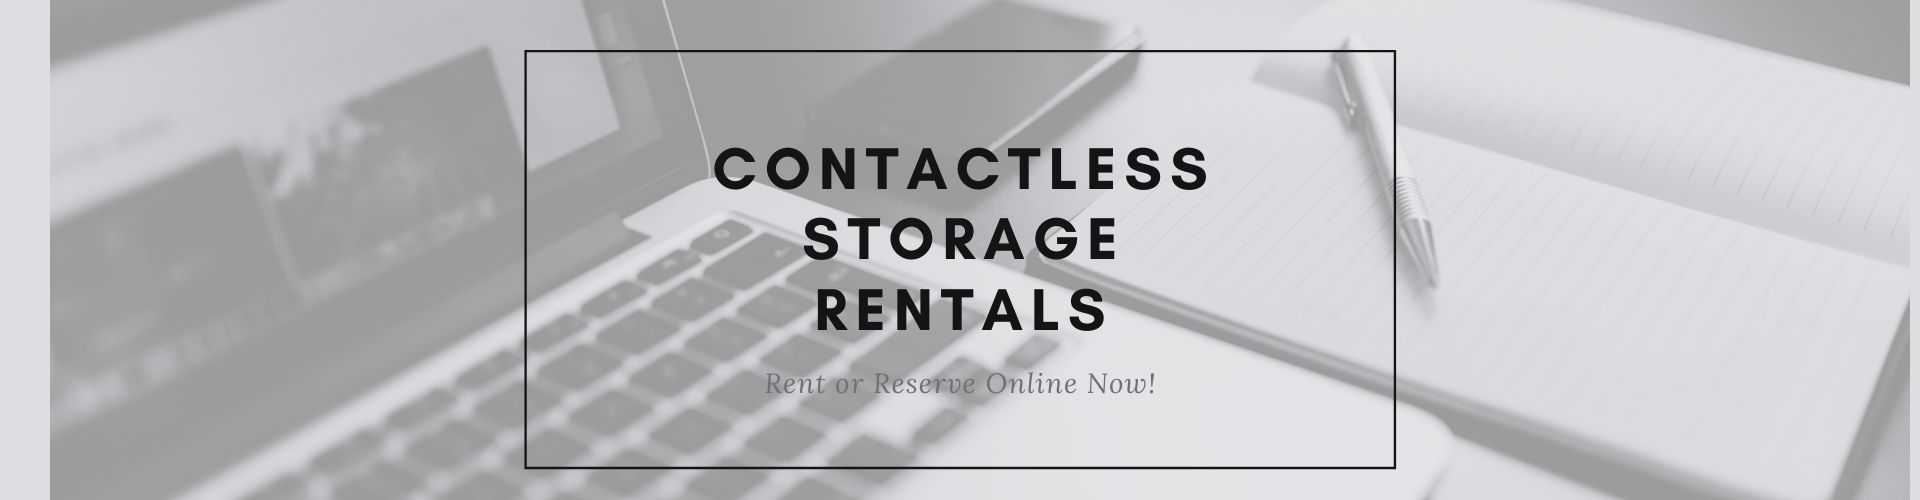 Contactless Storage Rentals